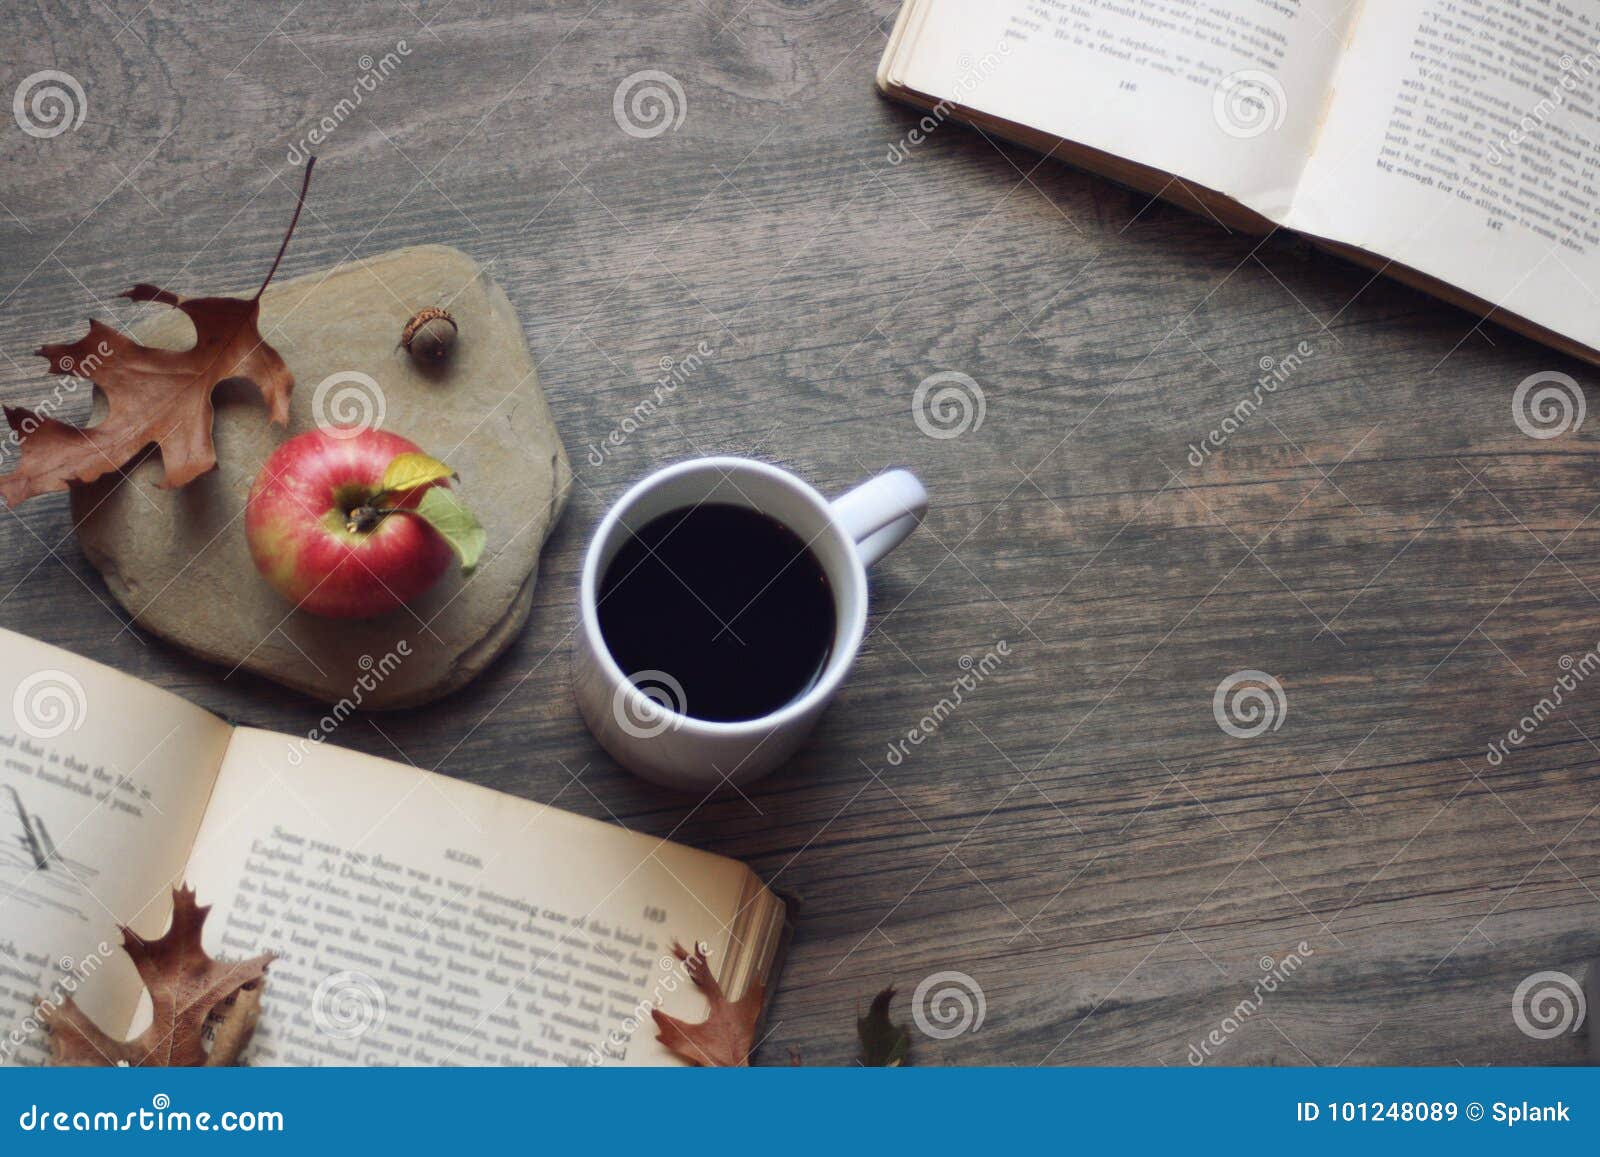 La natura morta di autunno con la mela, il caffè, libri aperti e rimane il fondo di legno rustico, lo spazio della copia, l'orizz